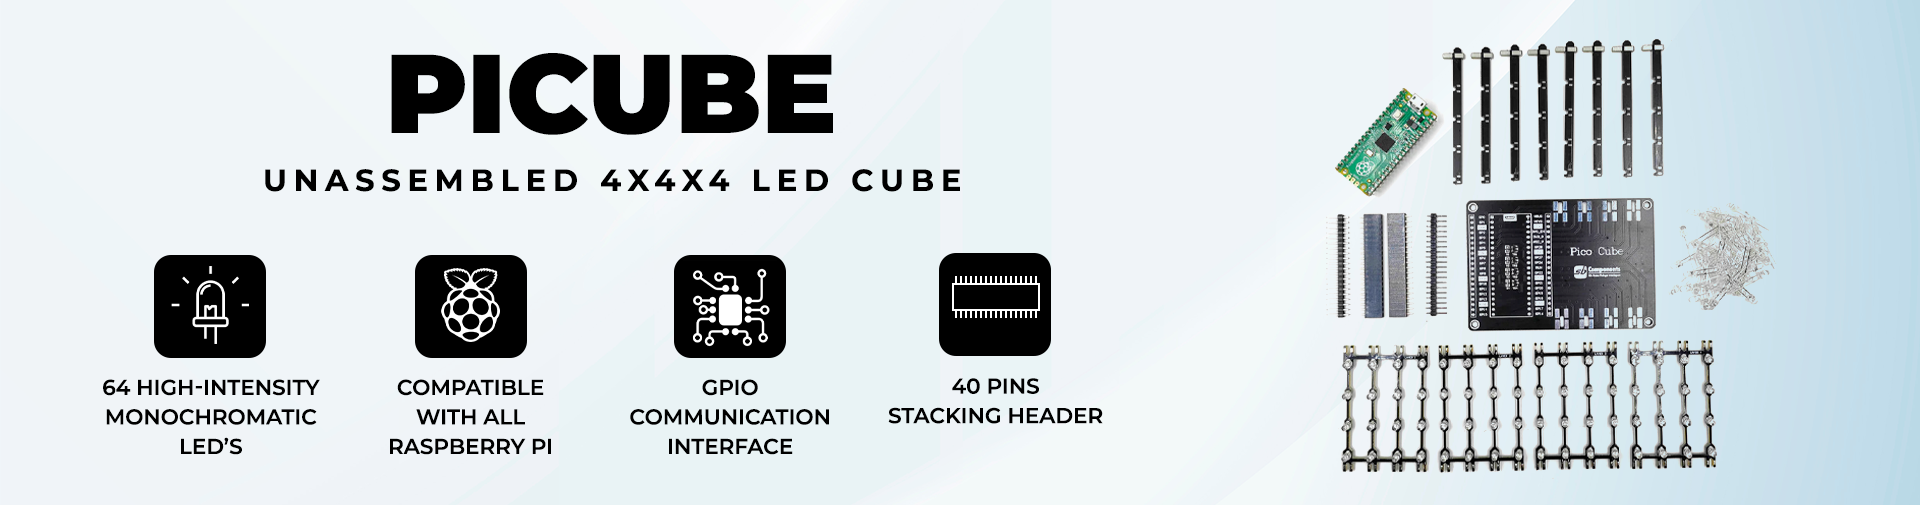 PiCube: 4x4x4 LED Cube Unassembled